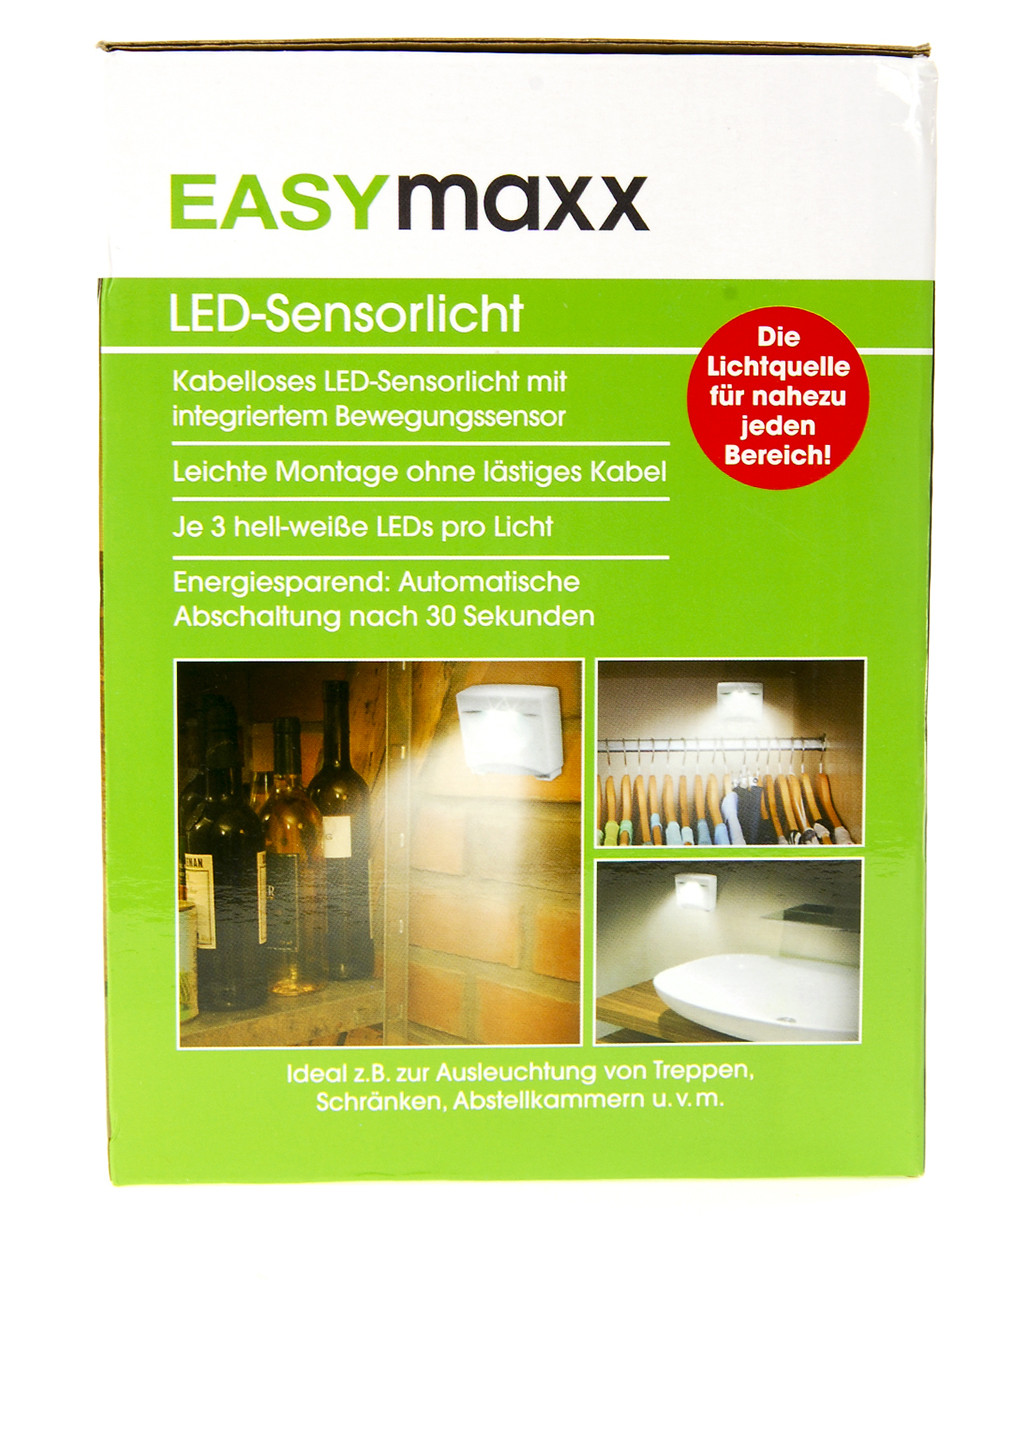 Світильник LED настінний з датчиком руху (3 шт.) Easymaxx (134424239)